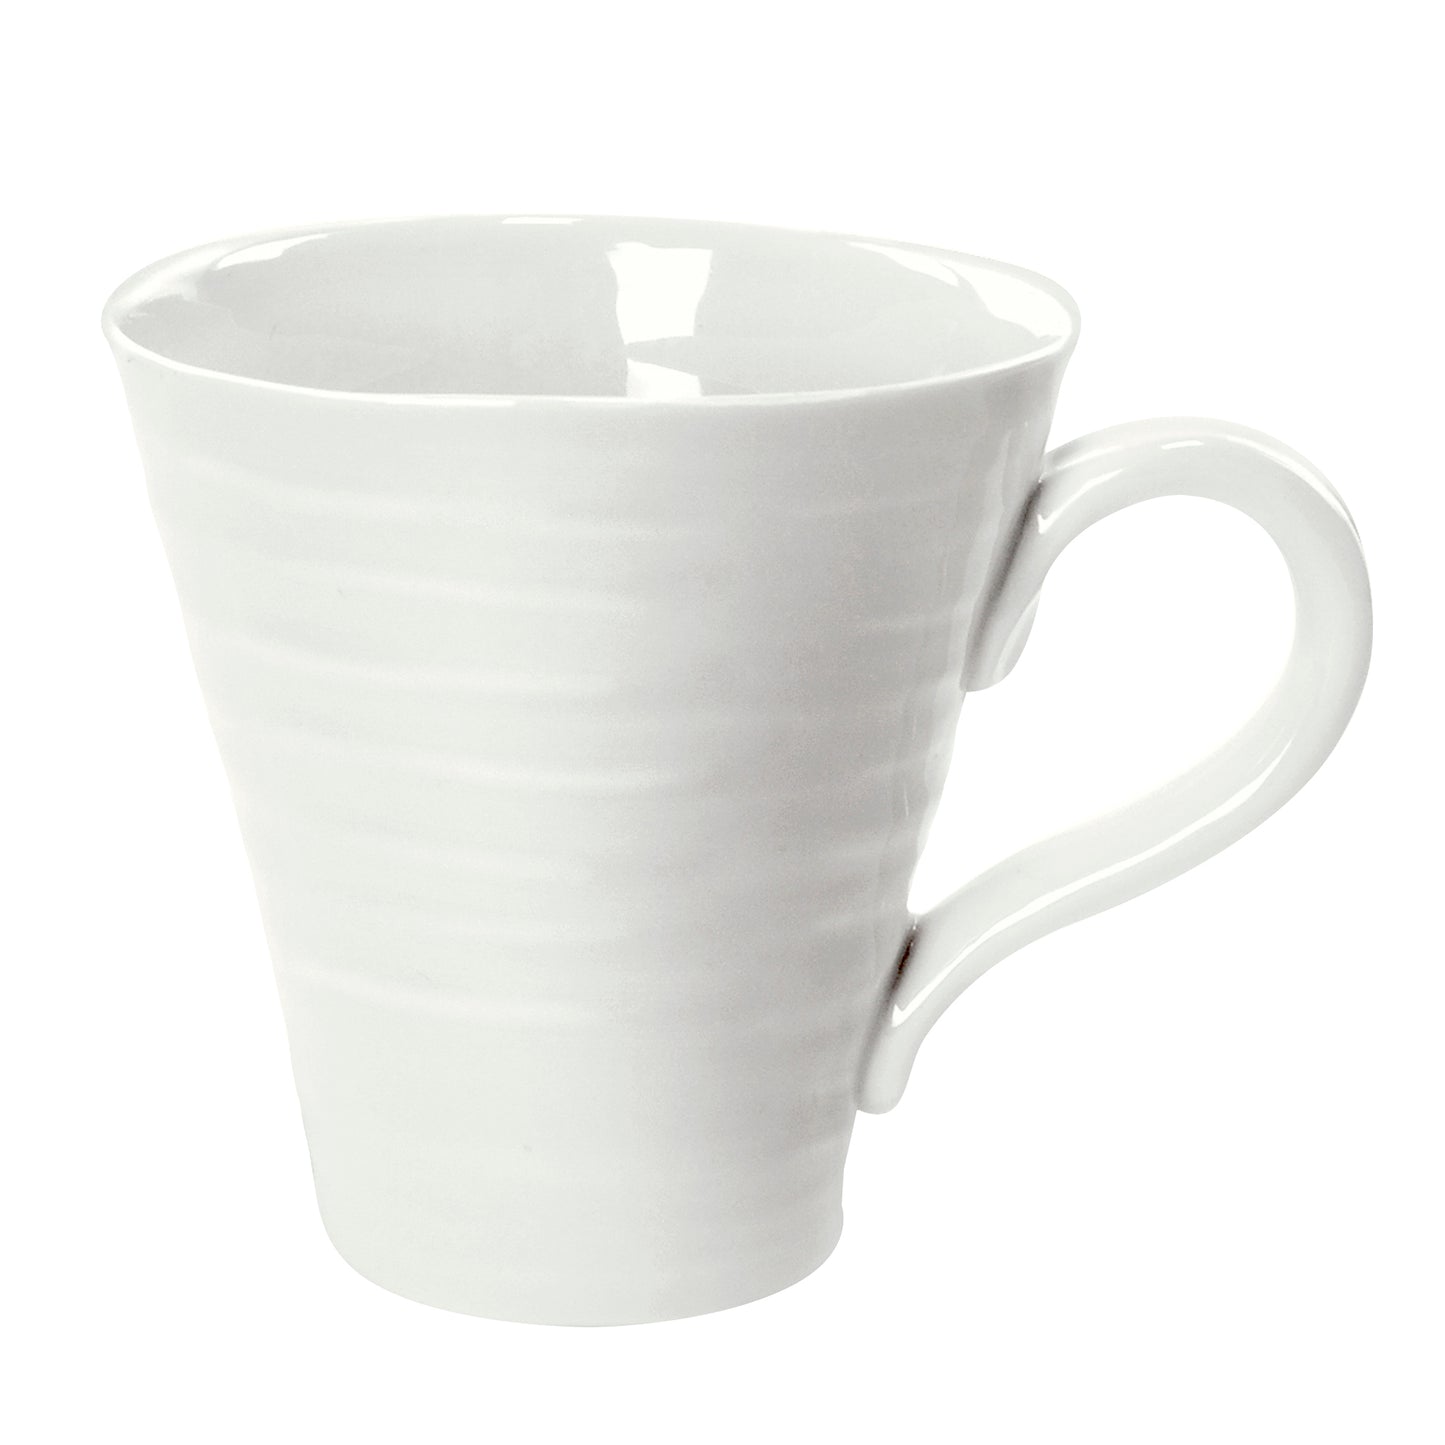 Sophie Conran for Portmeirion White Mugs Set of 4